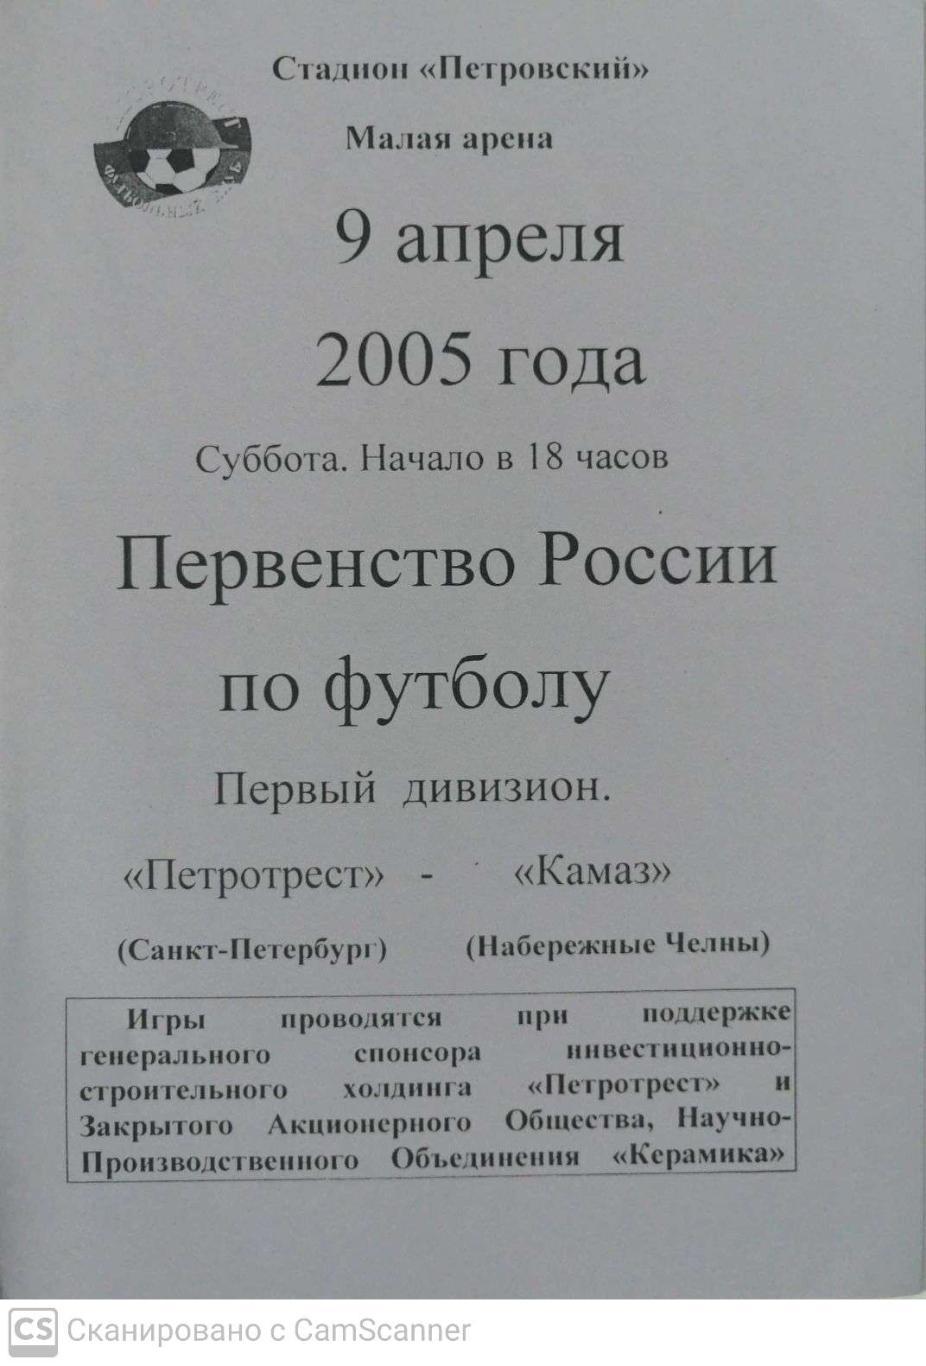 Первый дивизион. Петротрест СПб - КамАЗ 9.04.2005